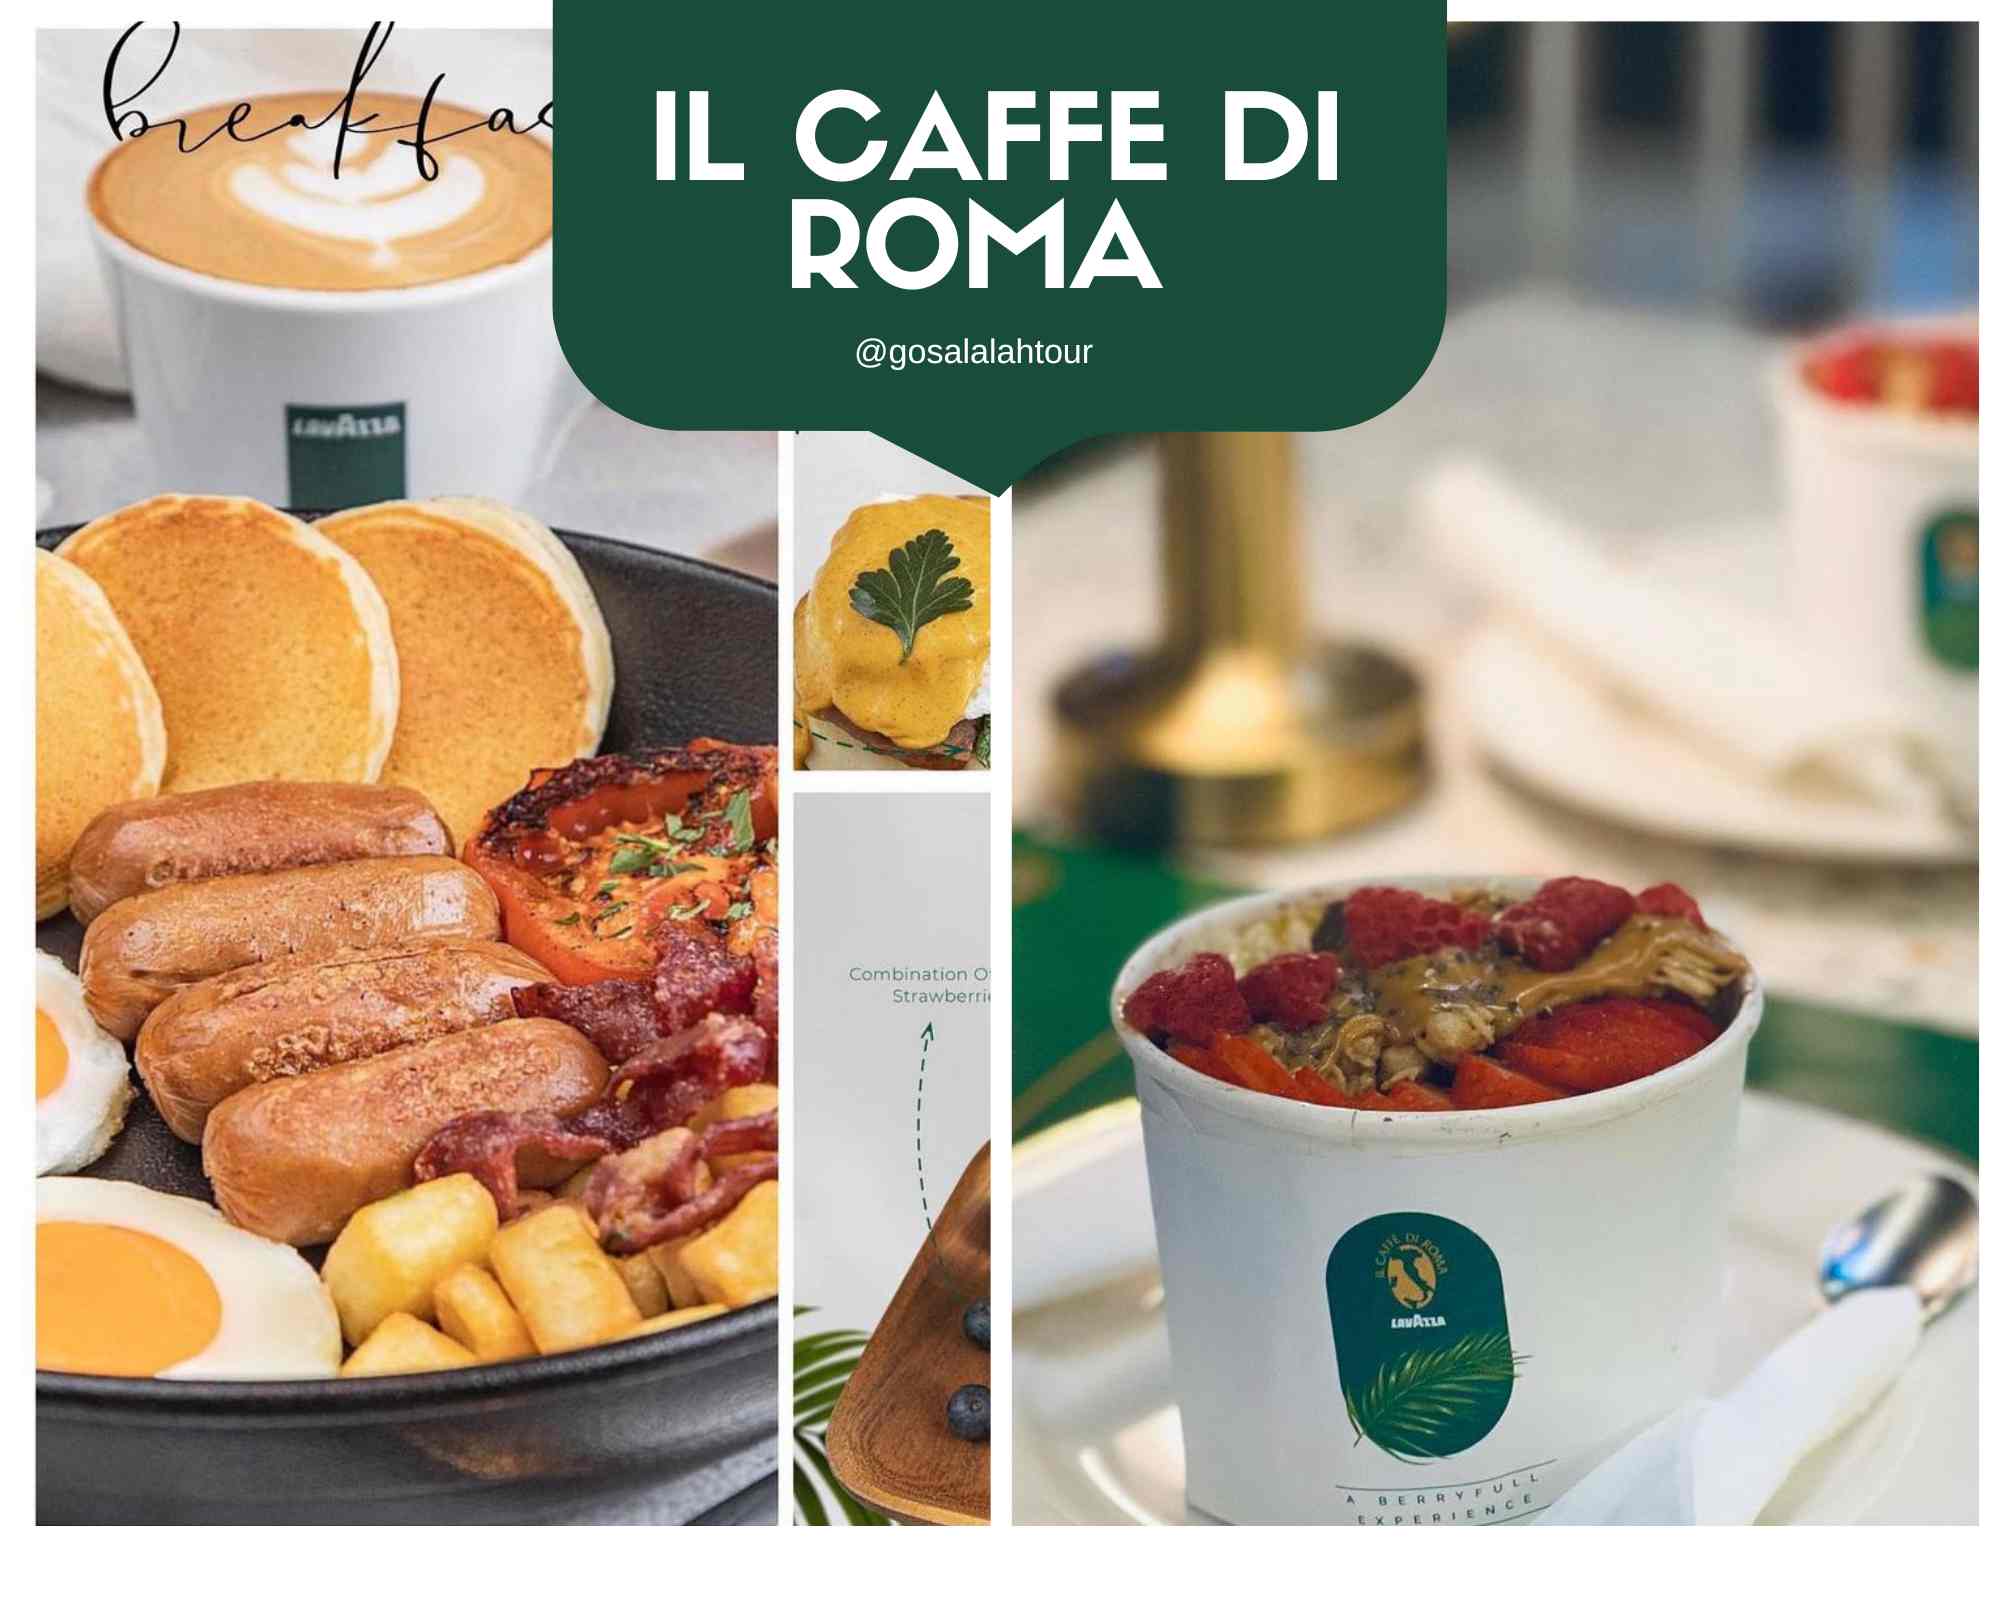 Il Caffe di Roma Breakfast